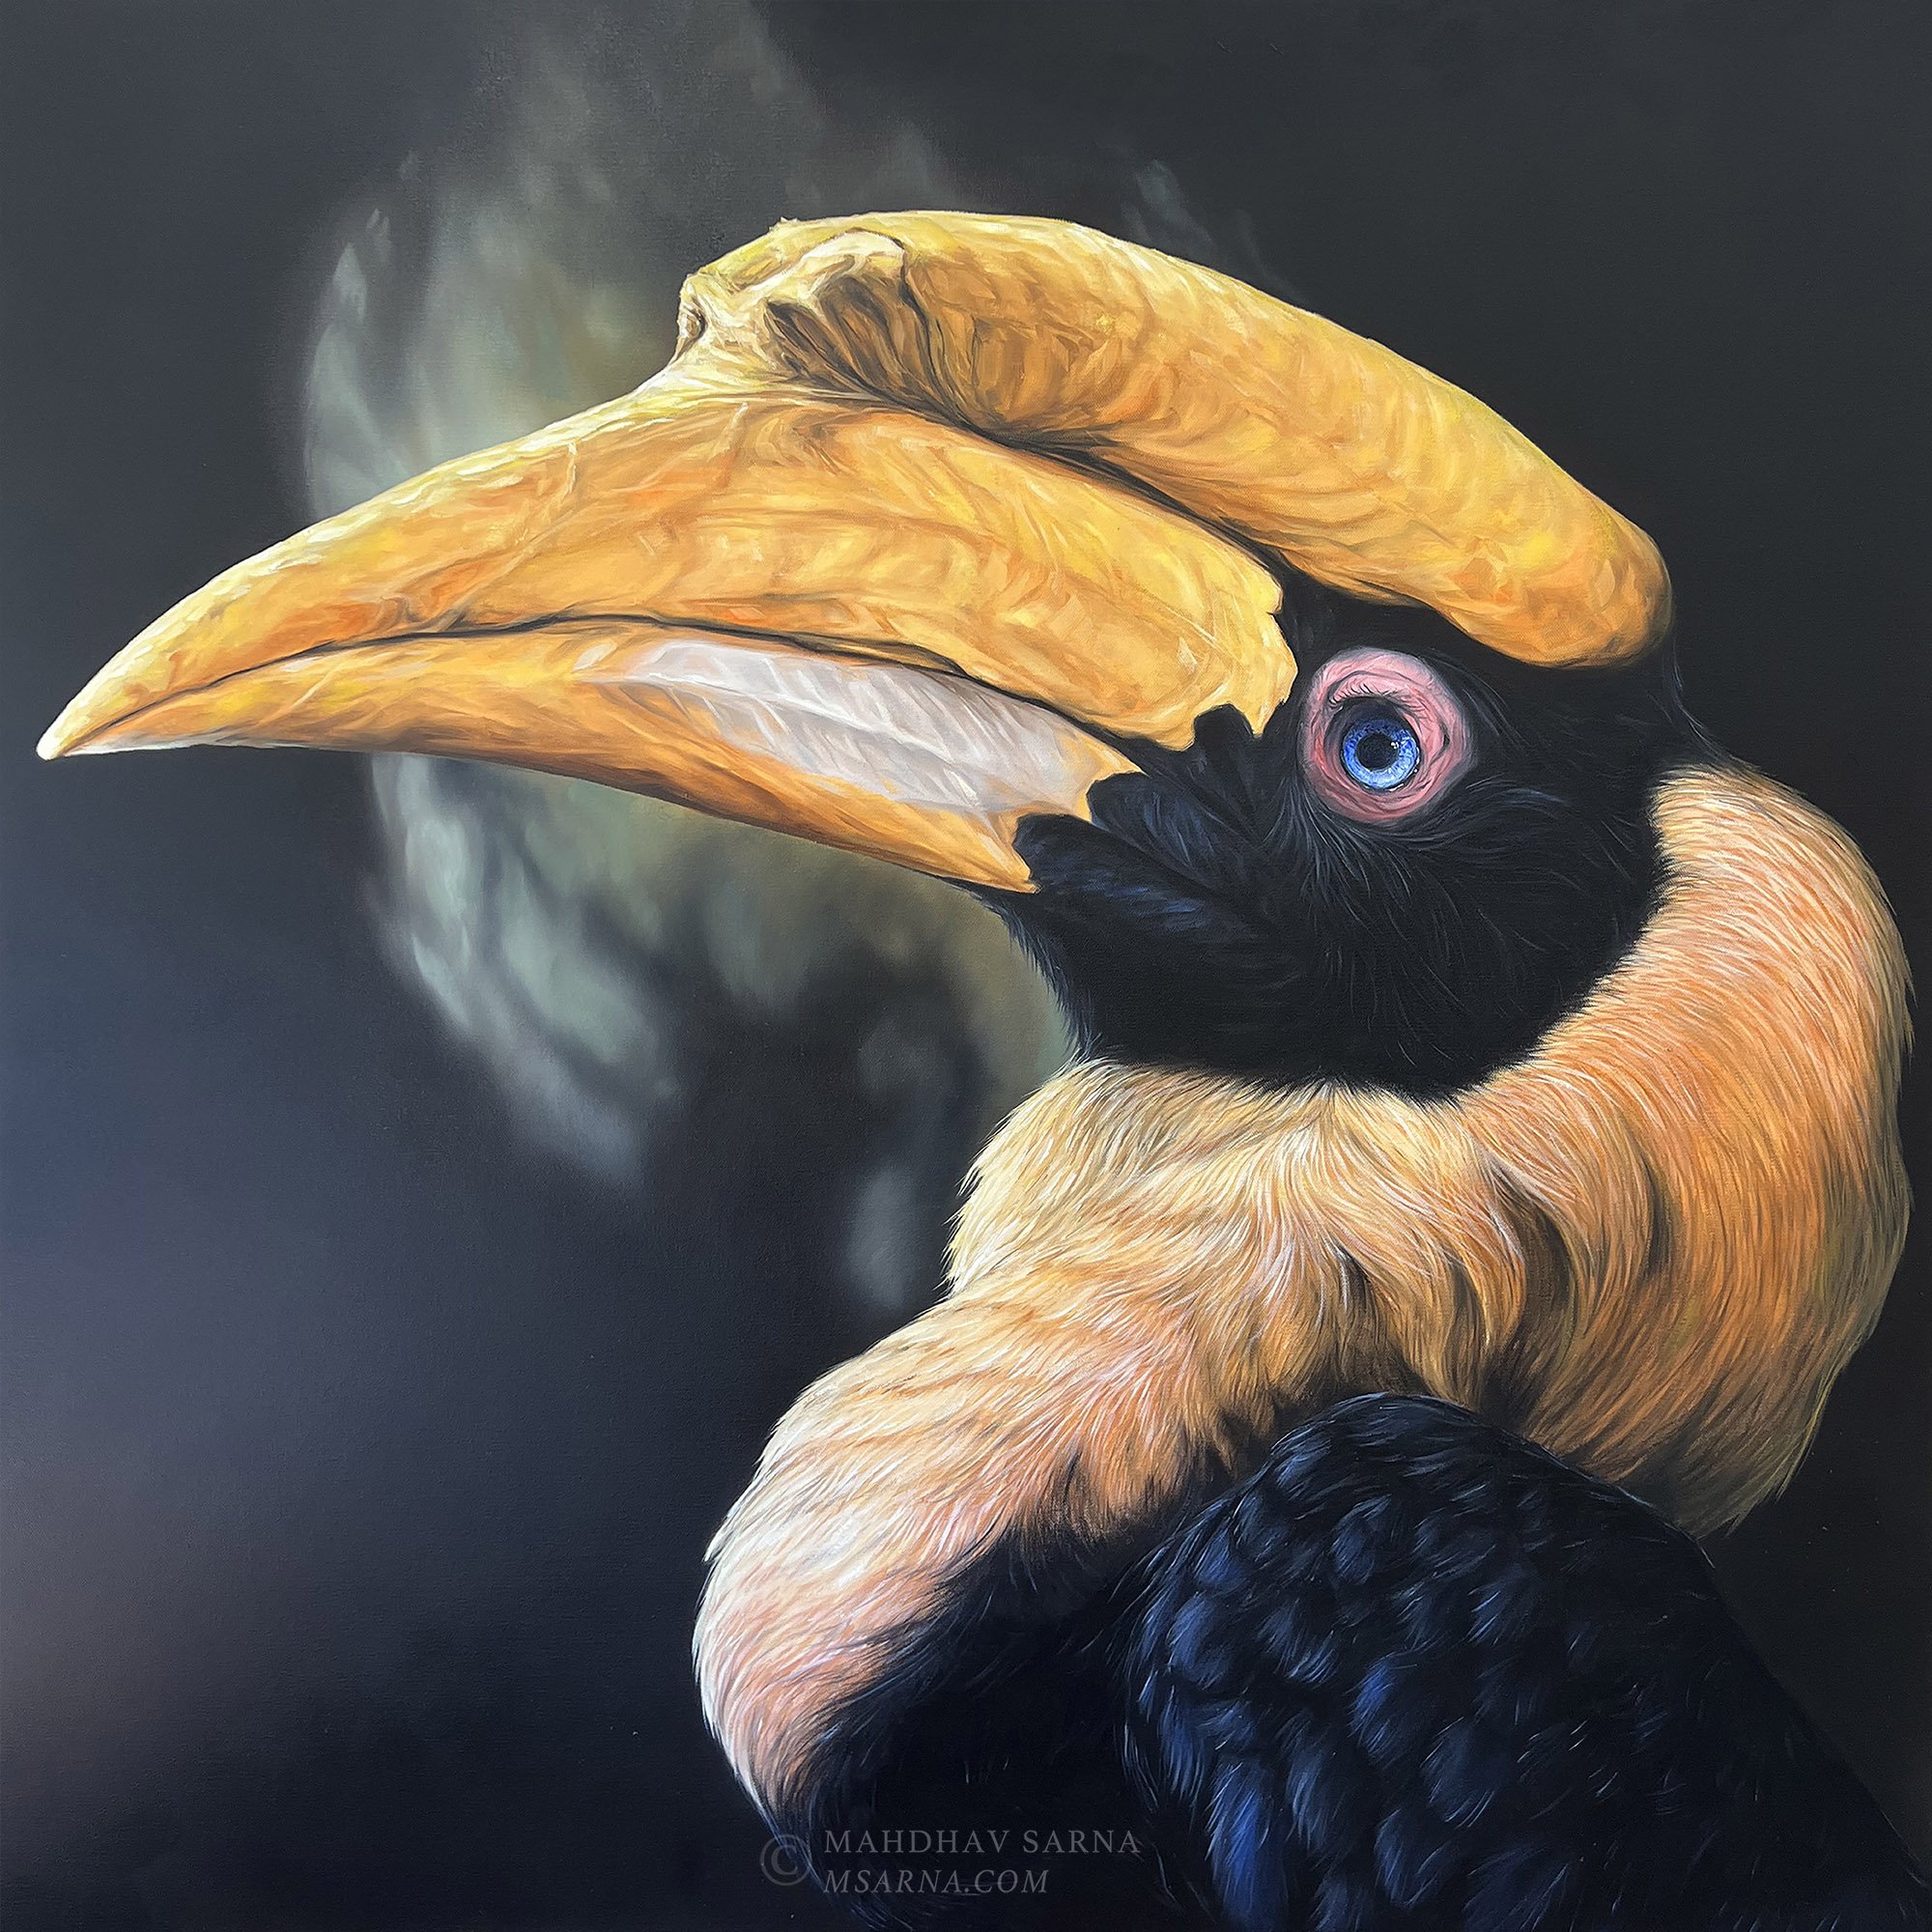 hornbill oil painting pois wildlife art mahdhav sarna 01.jpg